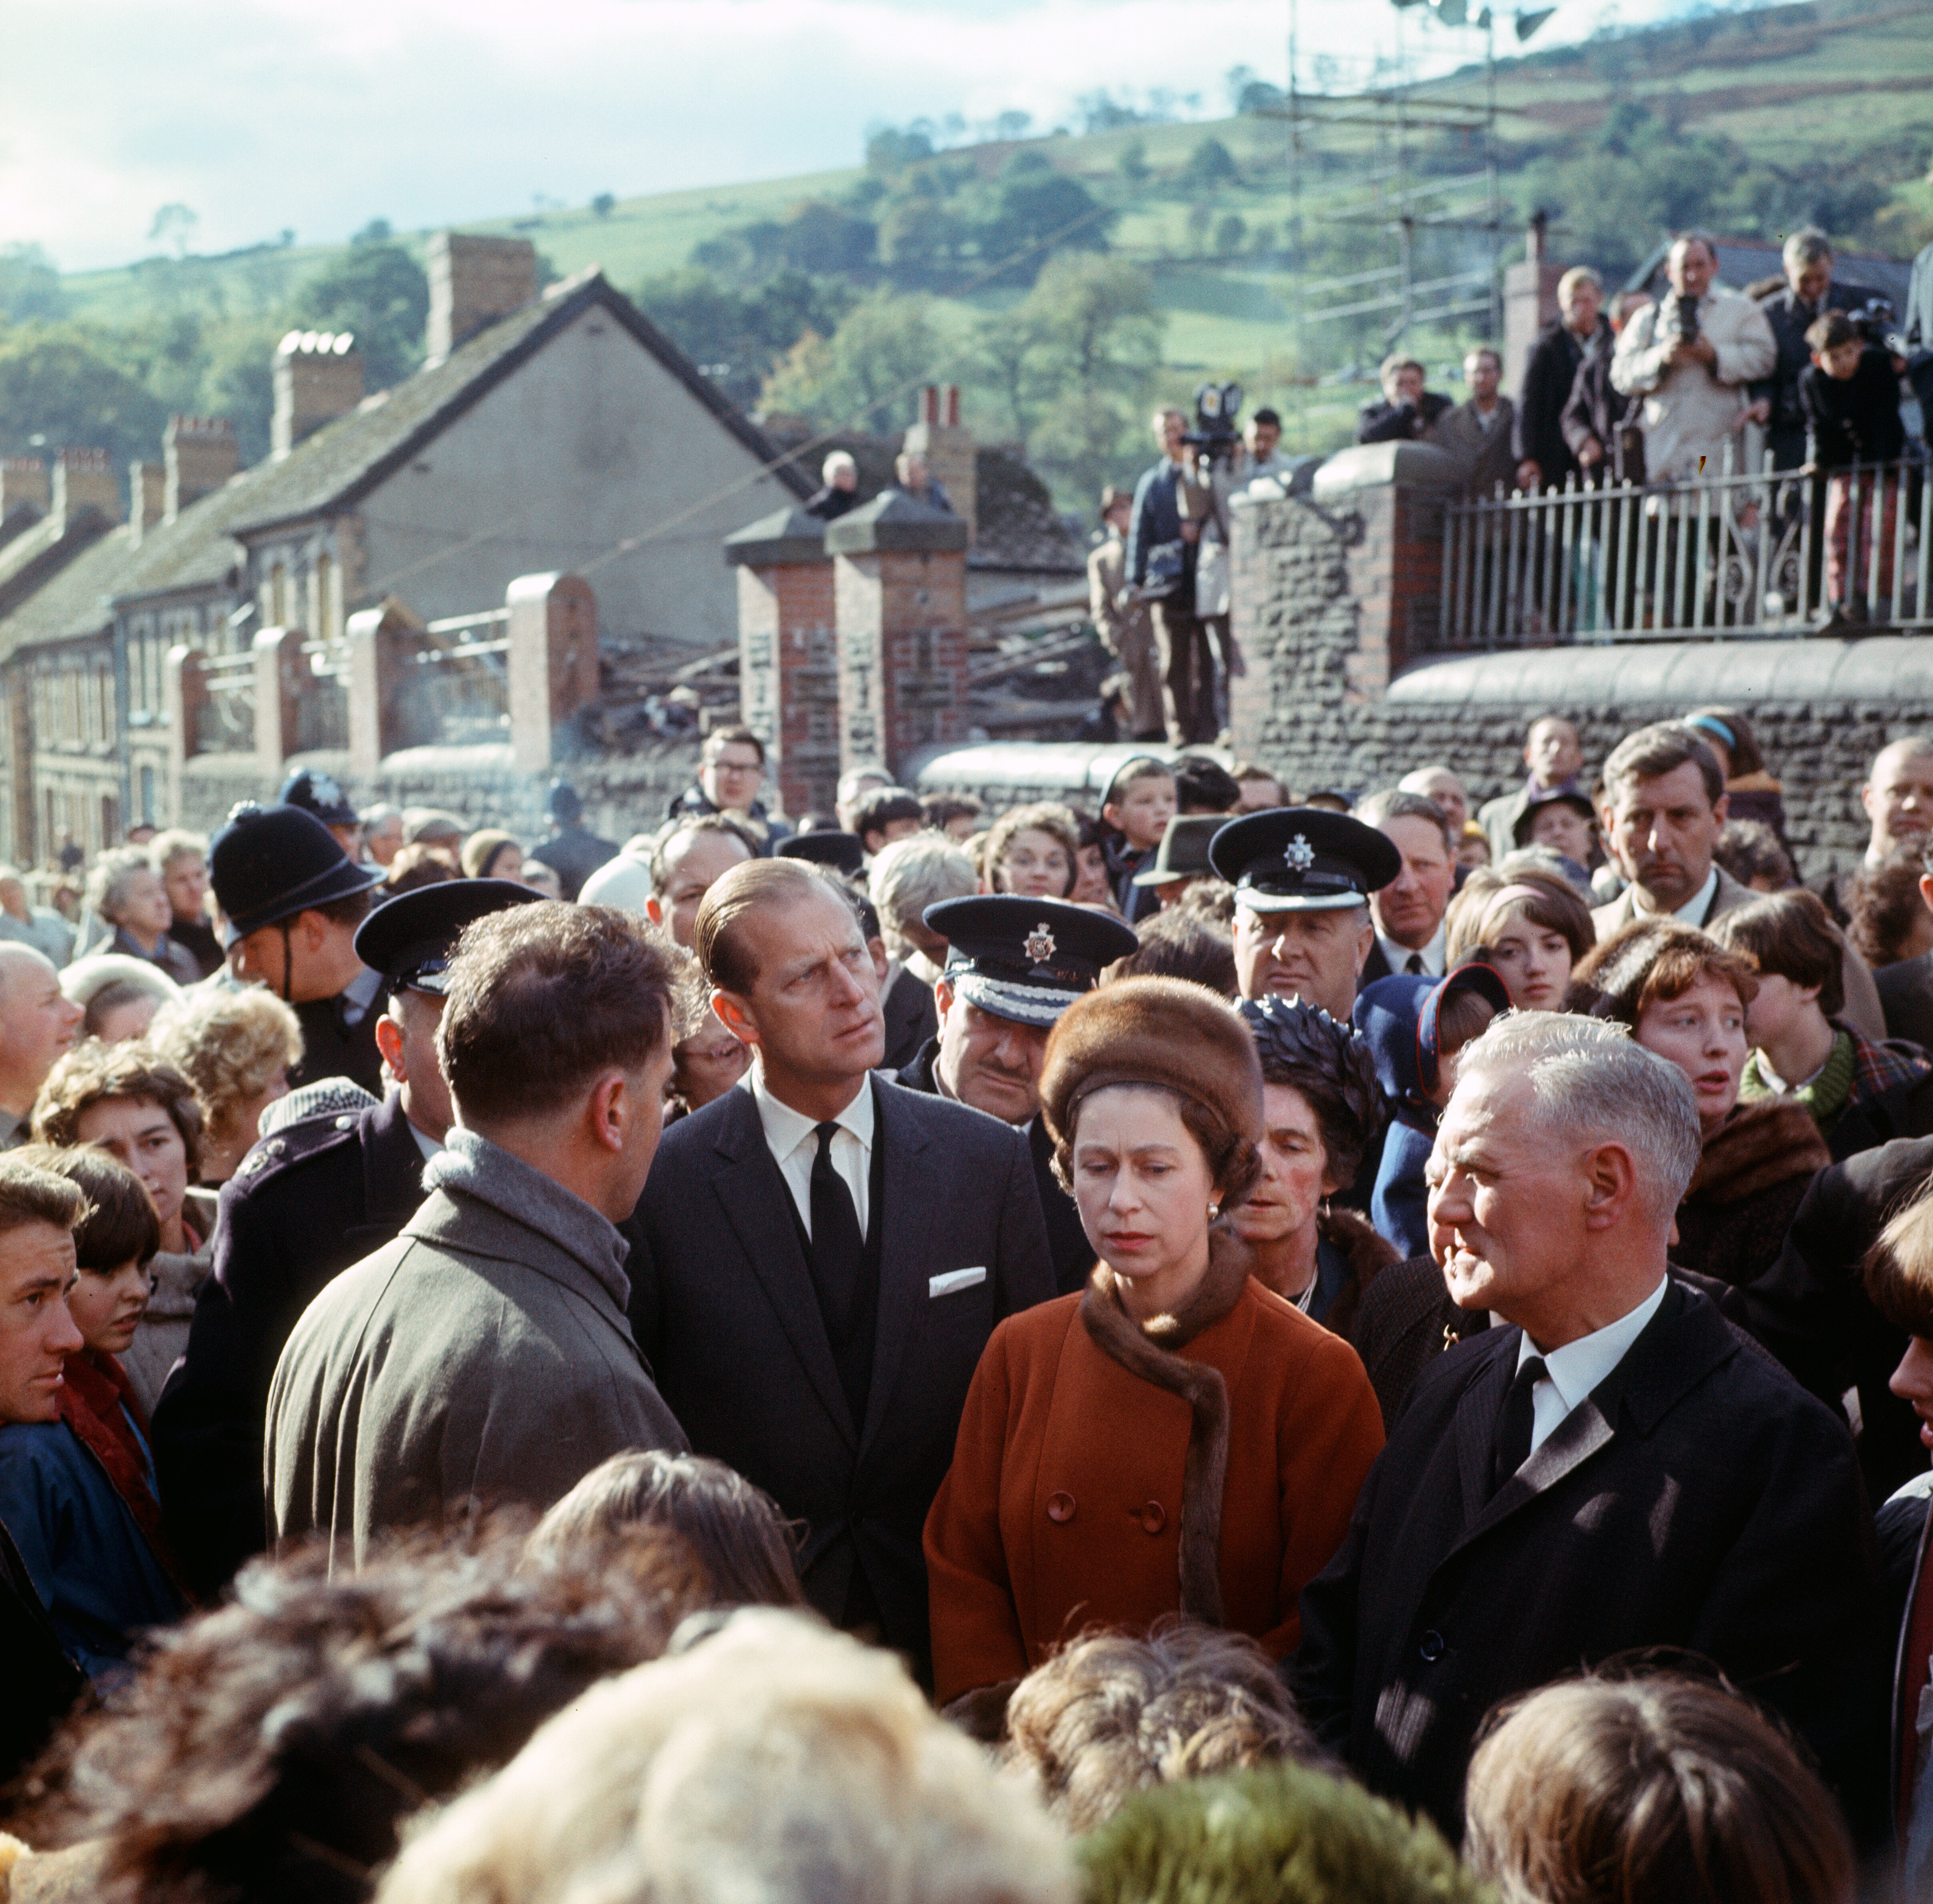 Die Behauptung der Serie, die Königin wolle nicht in das walisische Dorf Aberfan, wo die örtliche Schule im Jahr 1966 von Minenabfällen überschwemmt wurde und 116 Kinder und 28 Erwachsene starben, war reine Fiktion